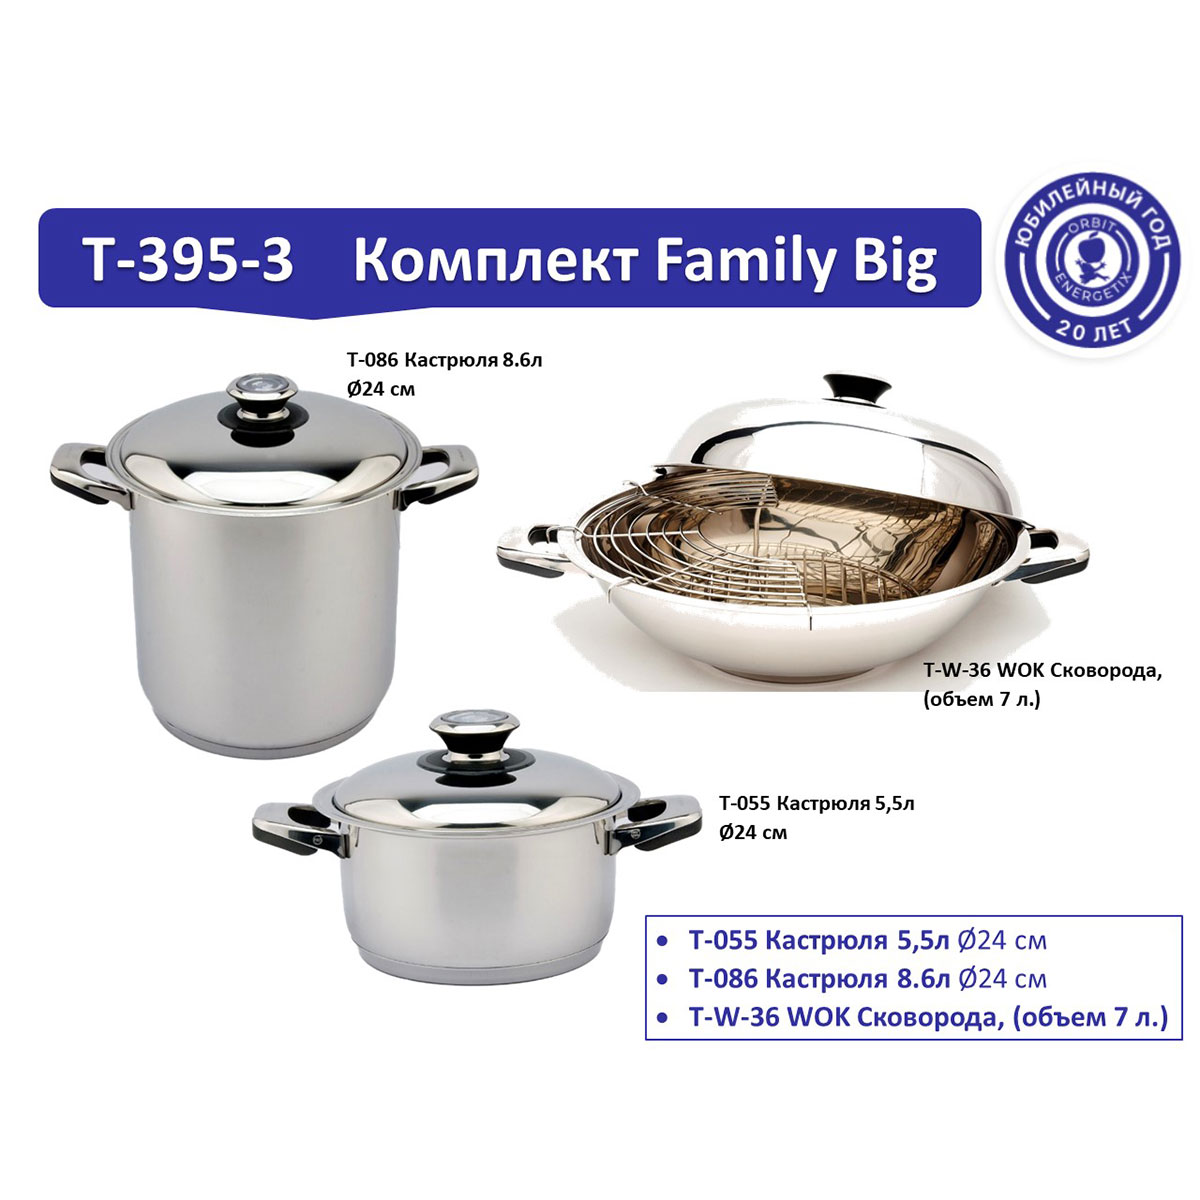 Комплект посуды T-395-3 Family Big